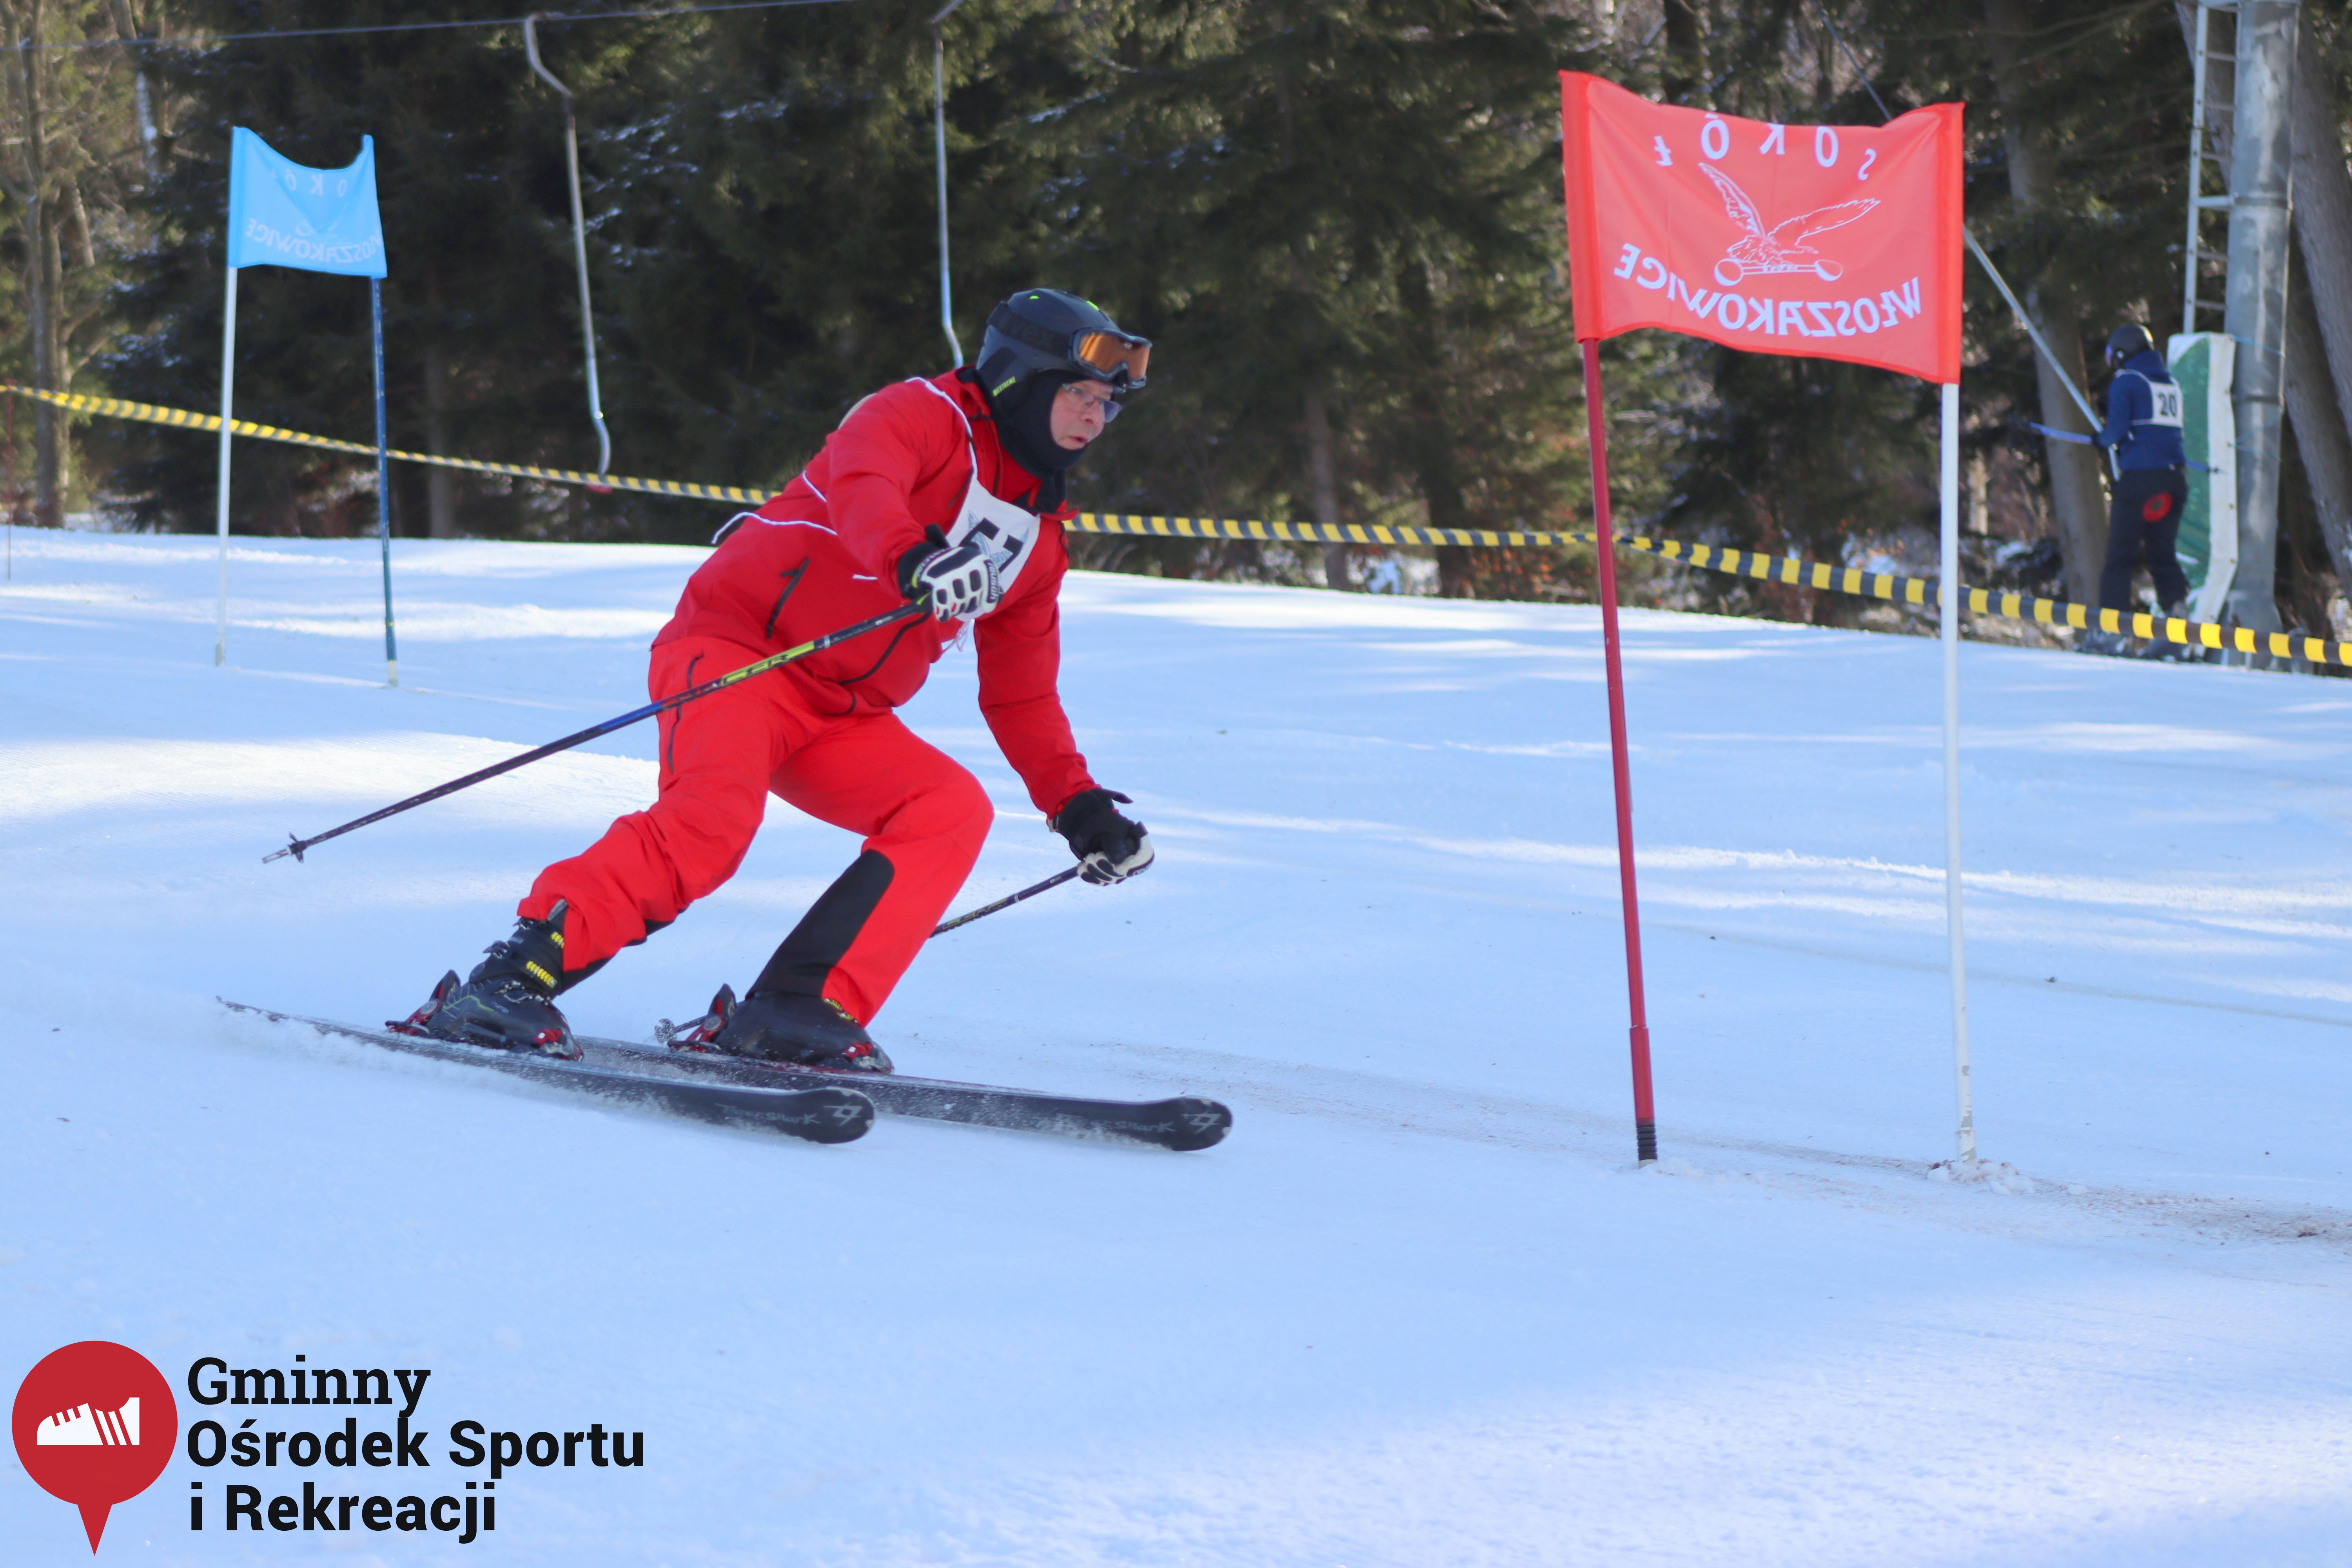 2022.02.12 - 18. Mistrzostwa Gminy Woszakowice w narciarstwie032.jpg - 1,39 MB